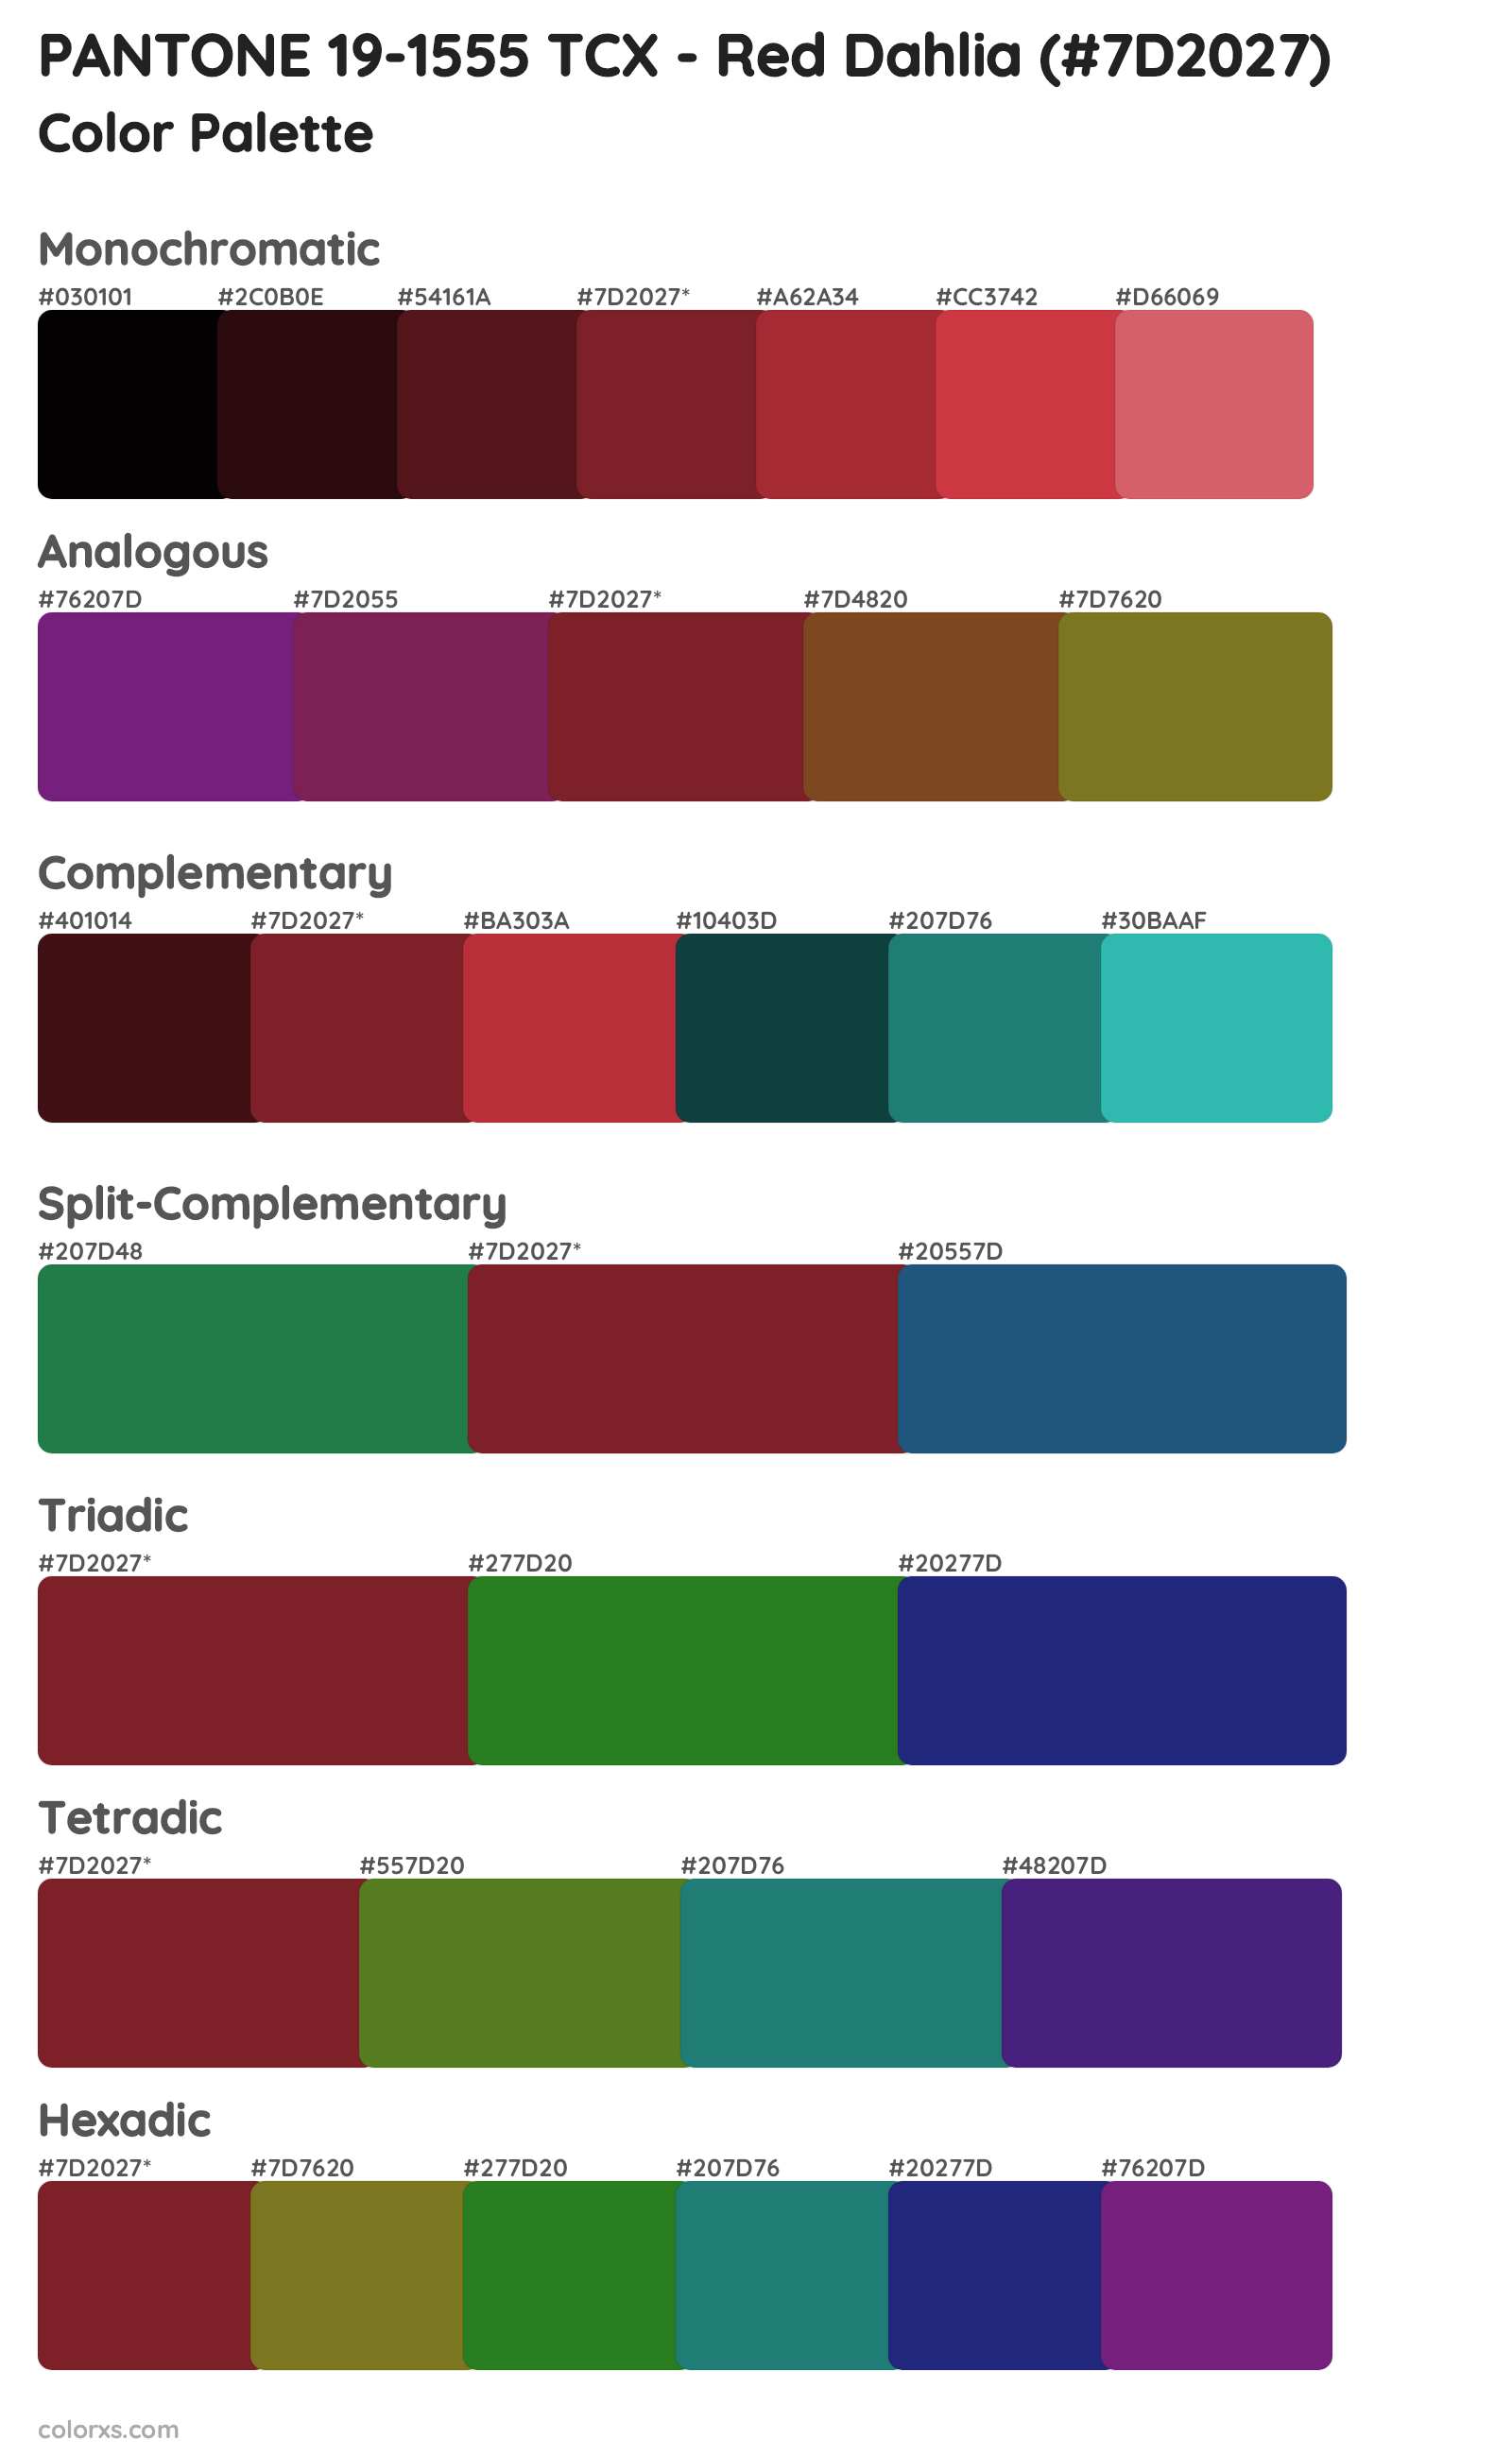 PANTONE 19-1555 TCX - Red Dahlia Color Scheme Palettes